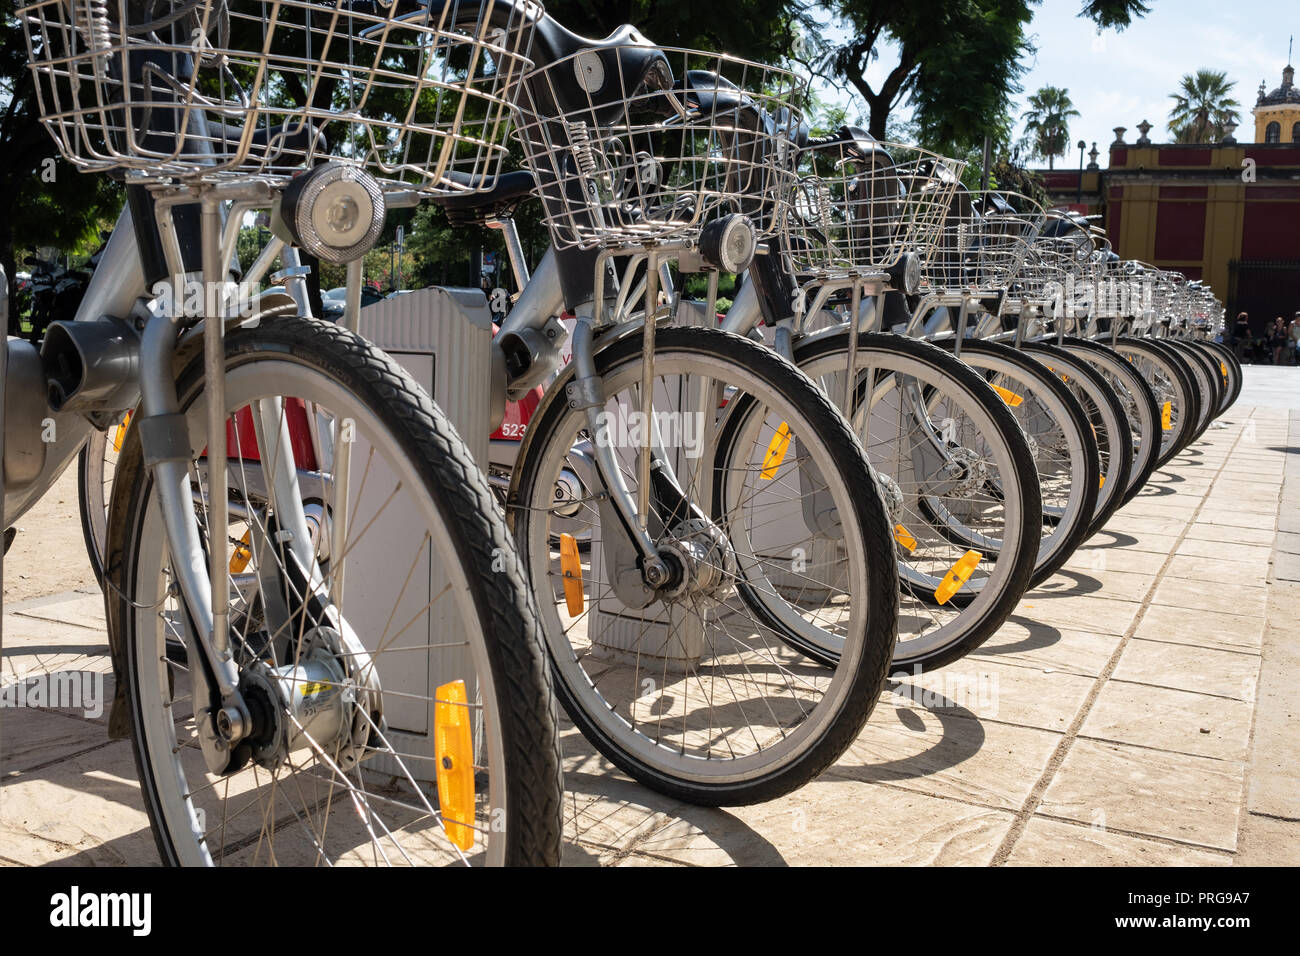 Fila de bicicletas aparcado en la calle Foto de stock